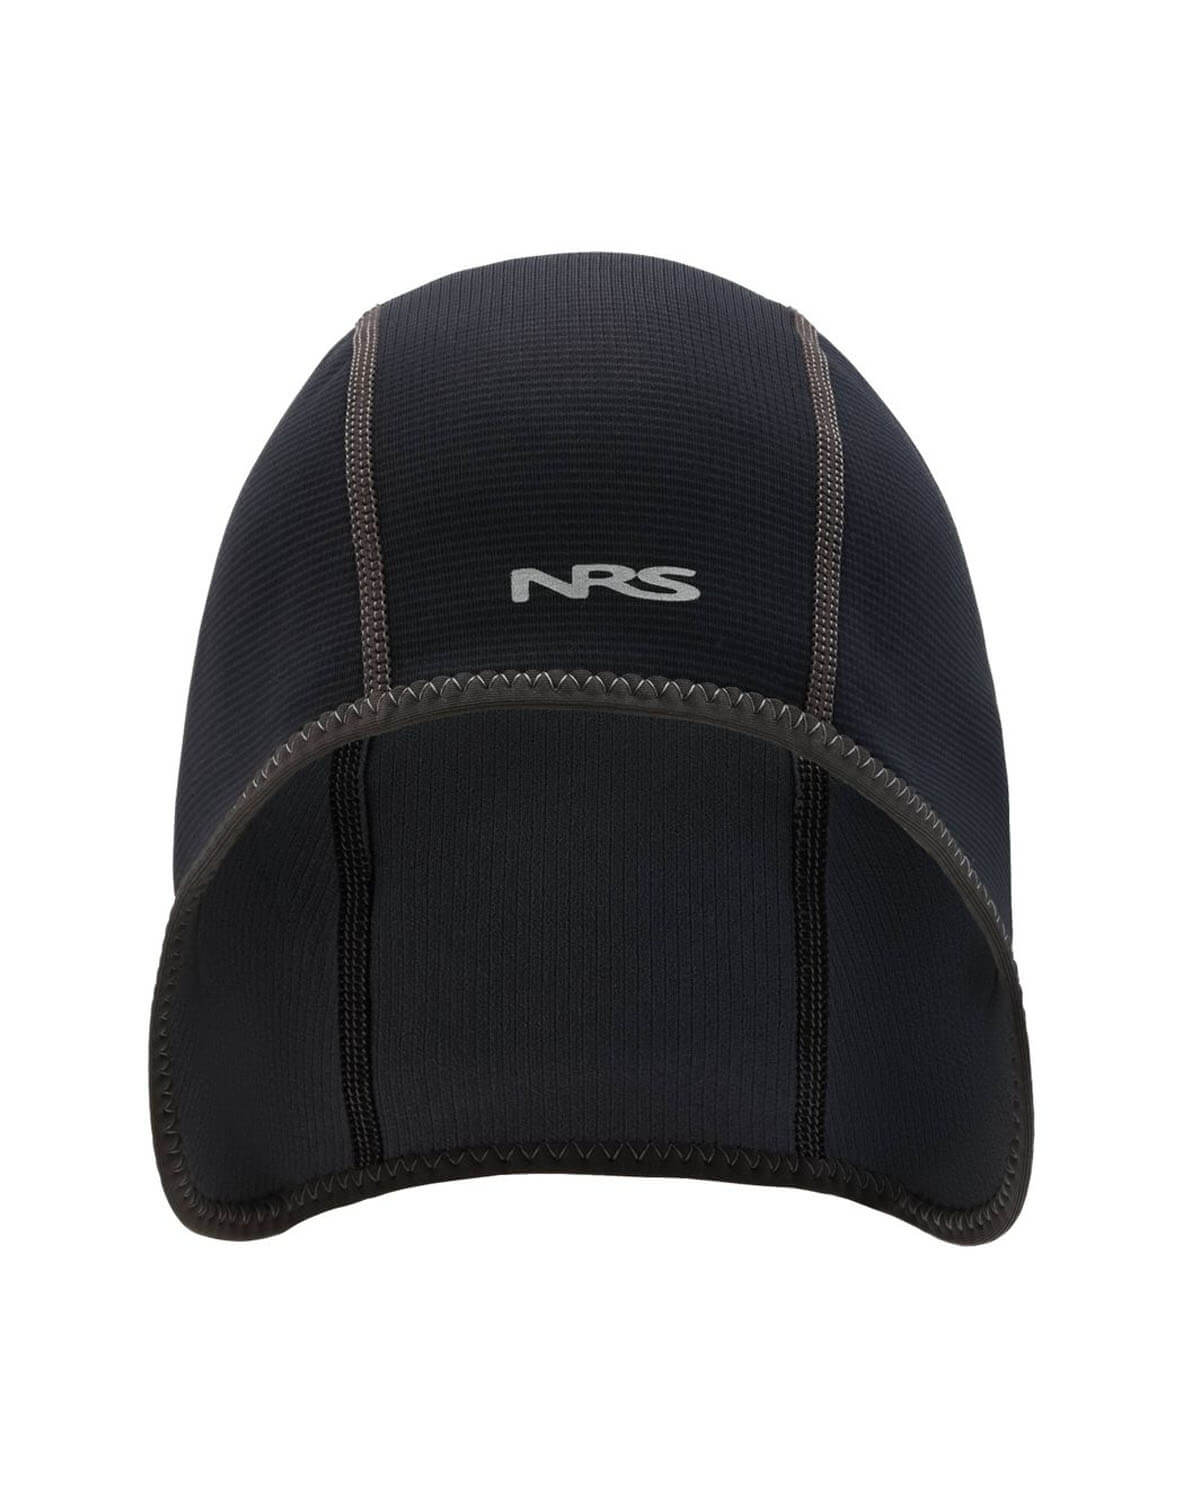 0.5mm NRS HydroSkin Helmet Liner 2022